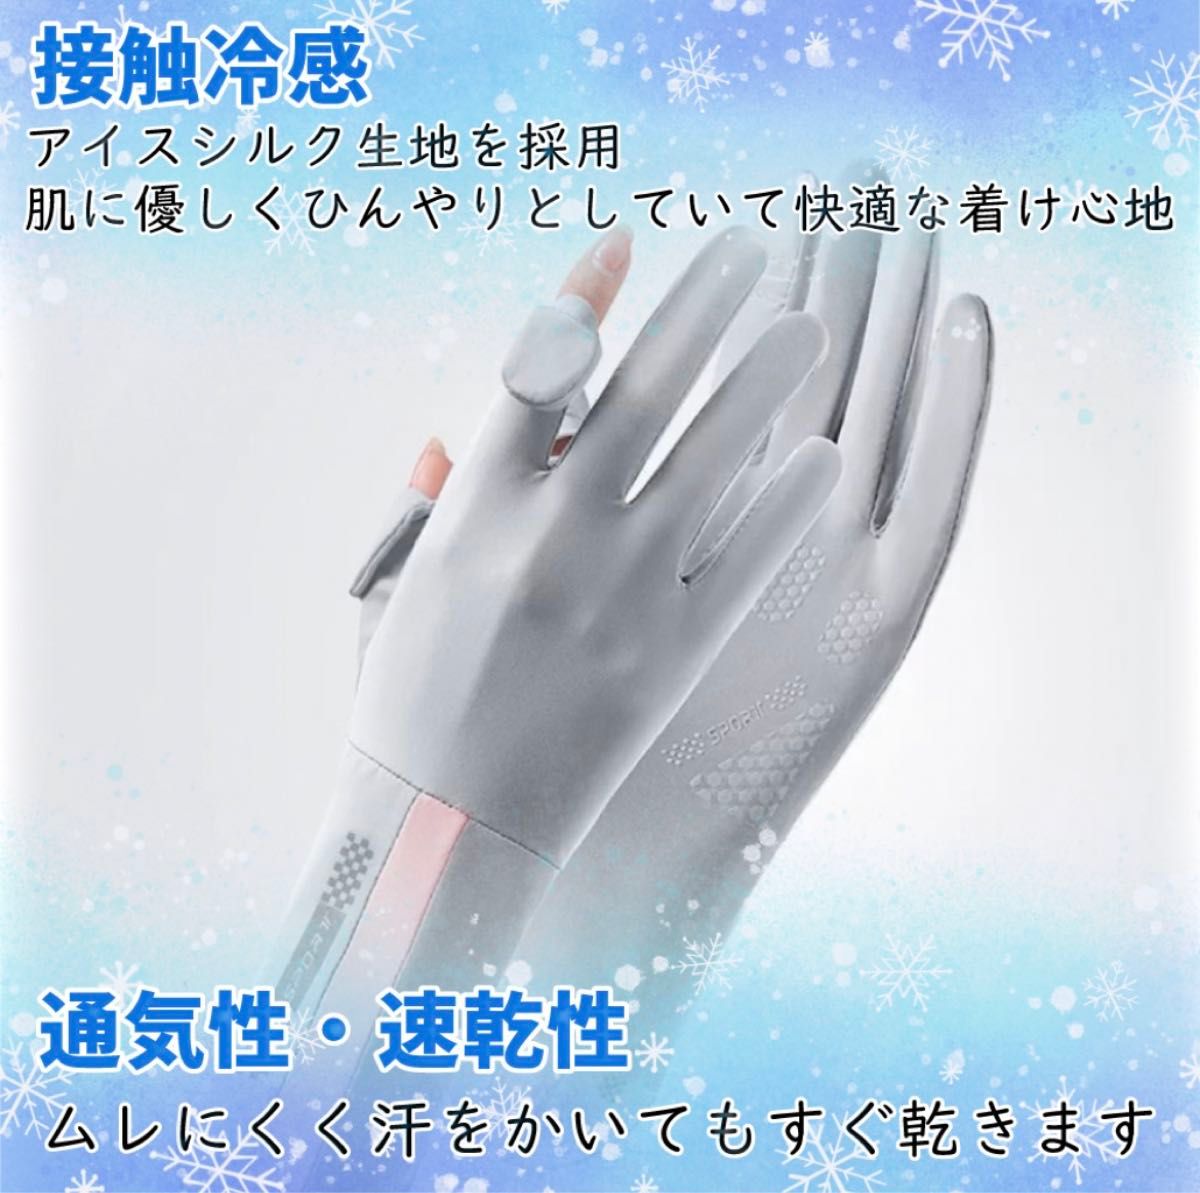 【ベージュ】UVグローブ 手袋 レディース アームカバー UVカット 日焼け止め 夏 接触冷感 通気性 速乾 UV対策 スマホ操作